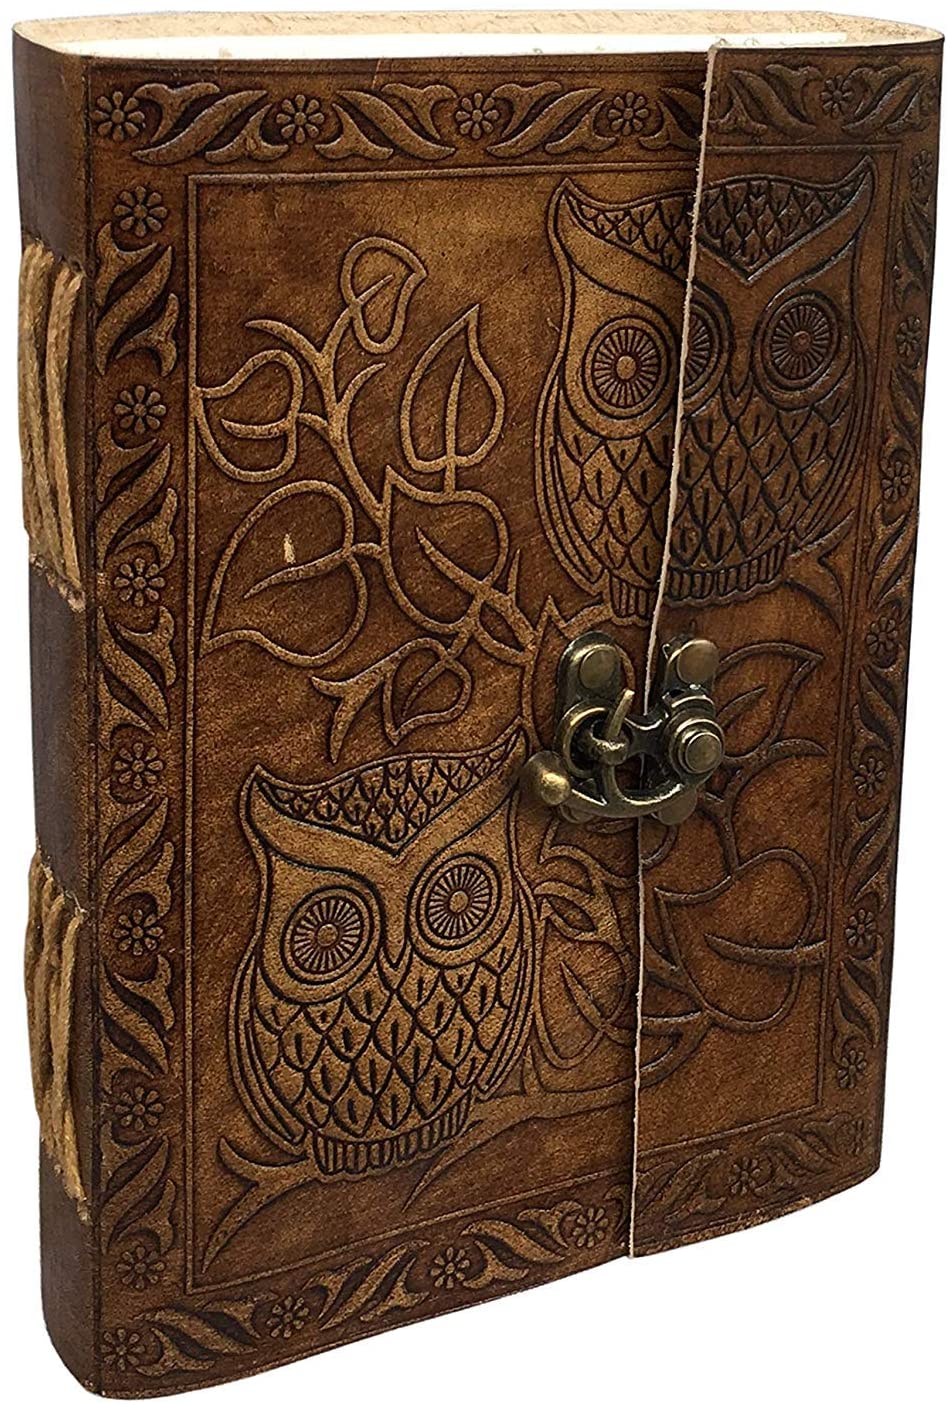 Vintage Owl Embossed Book